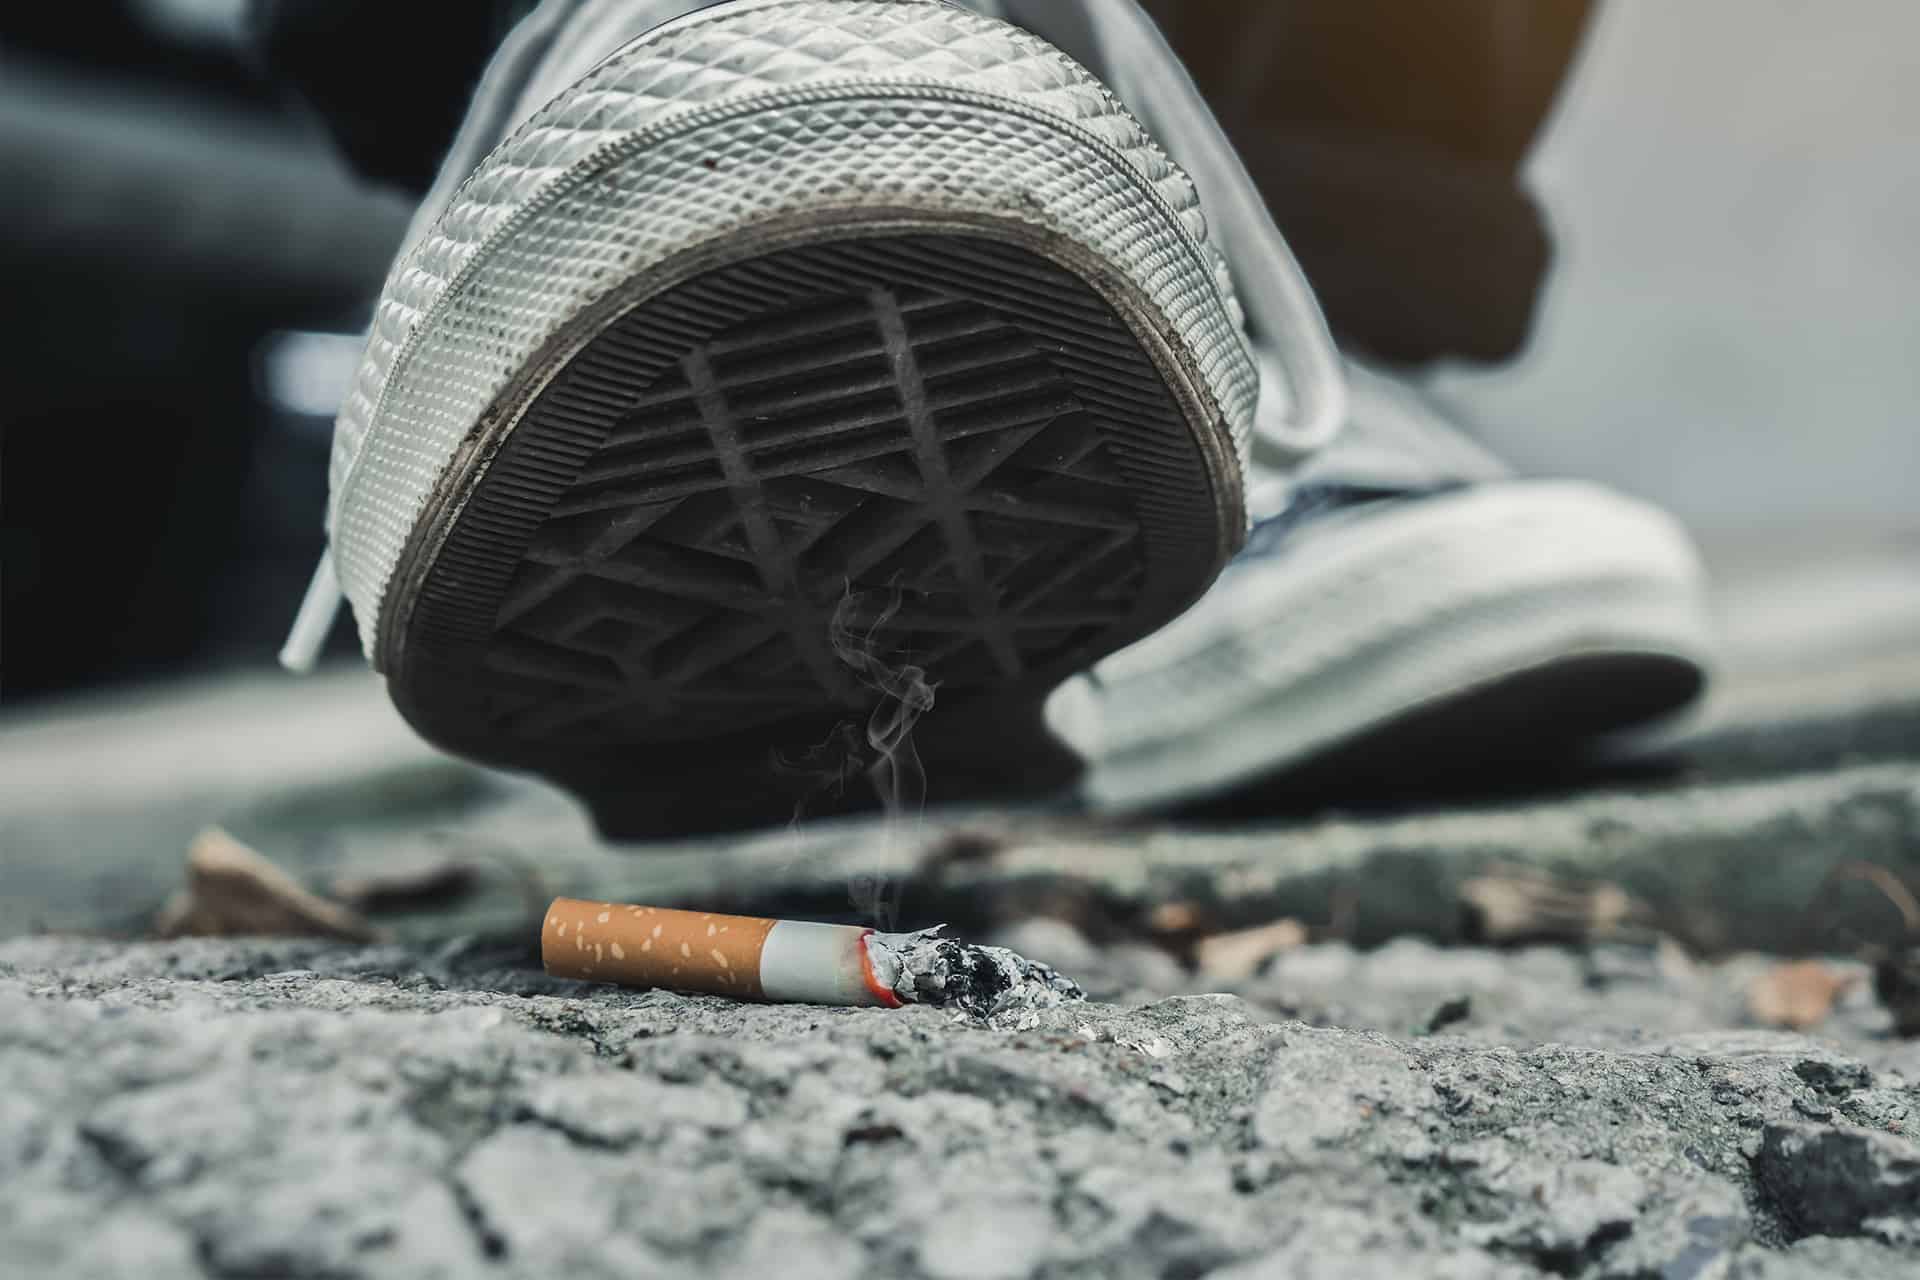 Comment et pourquoi transformer nos mégots de cigarettes